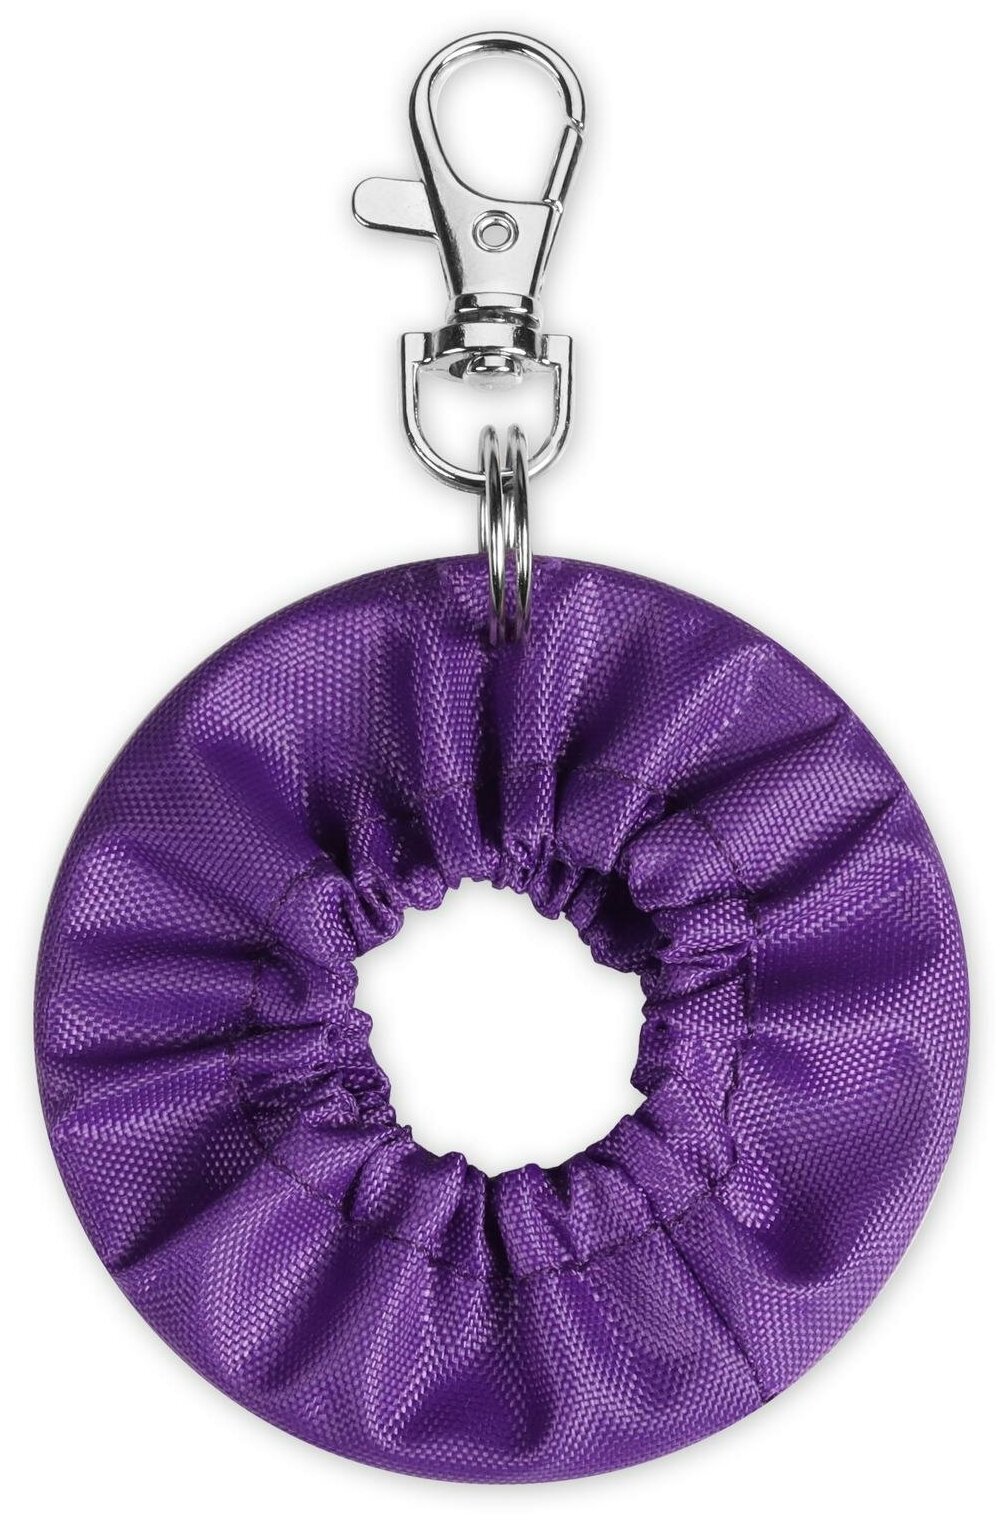 Сувенир брелок чехол для обруча INDIGO, Фиолетовый, 6 см